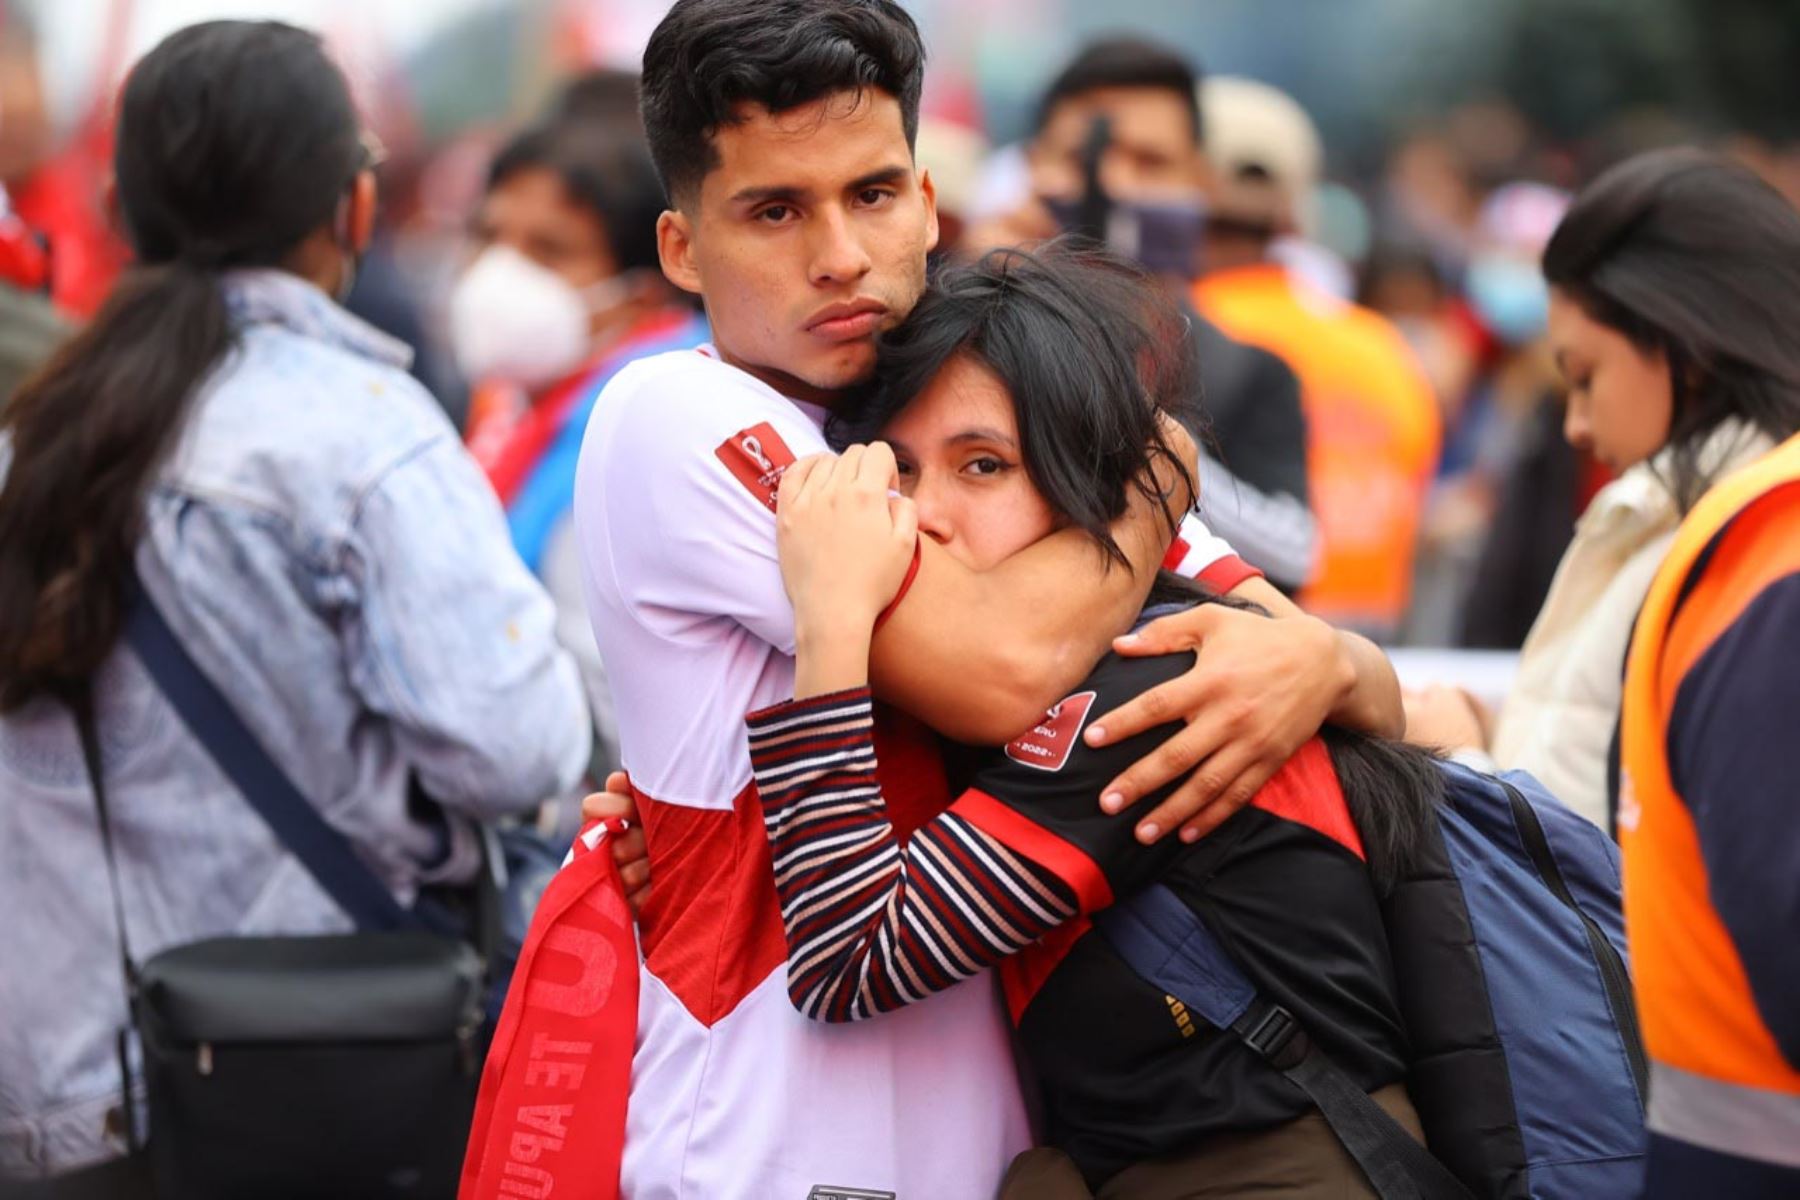 Saludable Mente: ¿por qué nos sigue doliendo tanto la eliminación de Perú a Qatar